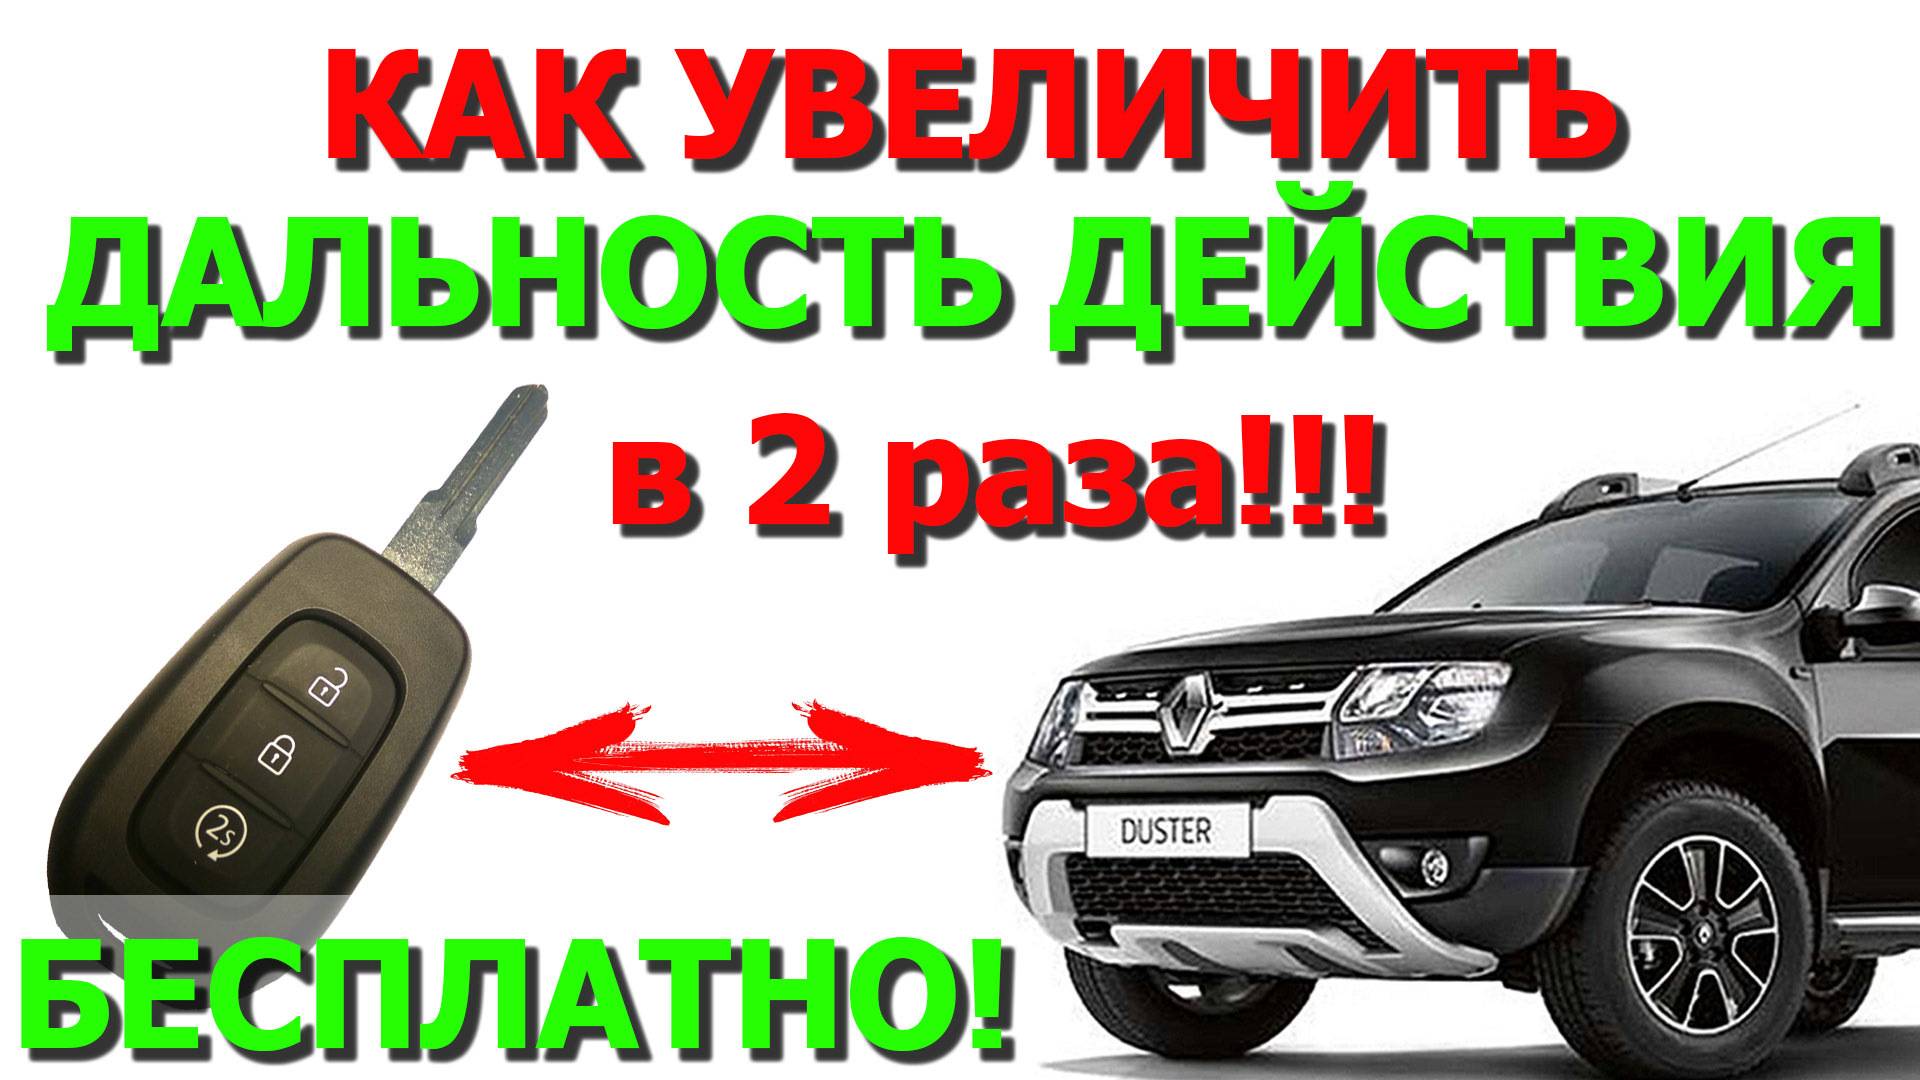 Купить и установить автозапуск на RENAULT DUSTER в Москве по выгодной цене